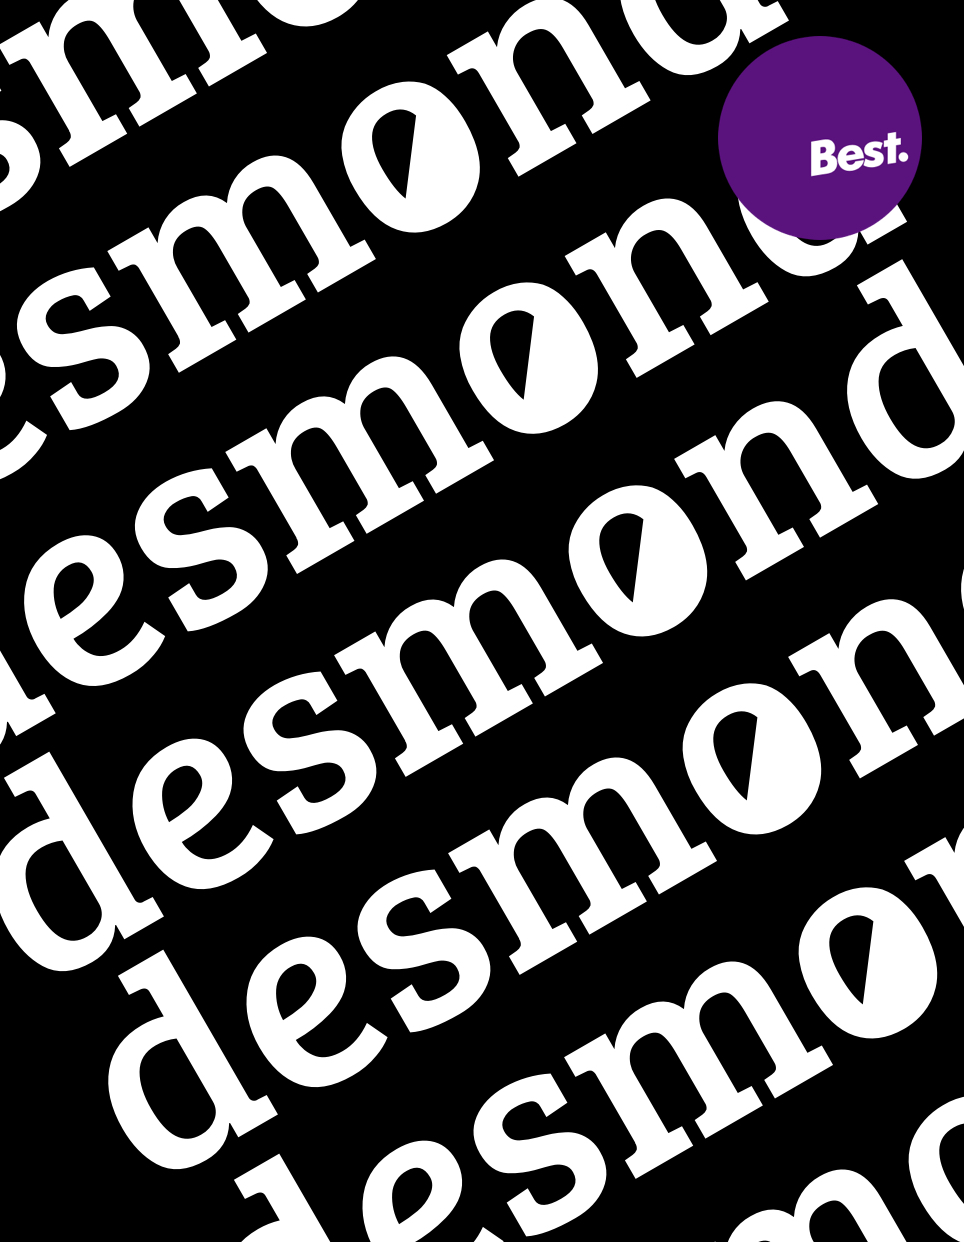 Desmond